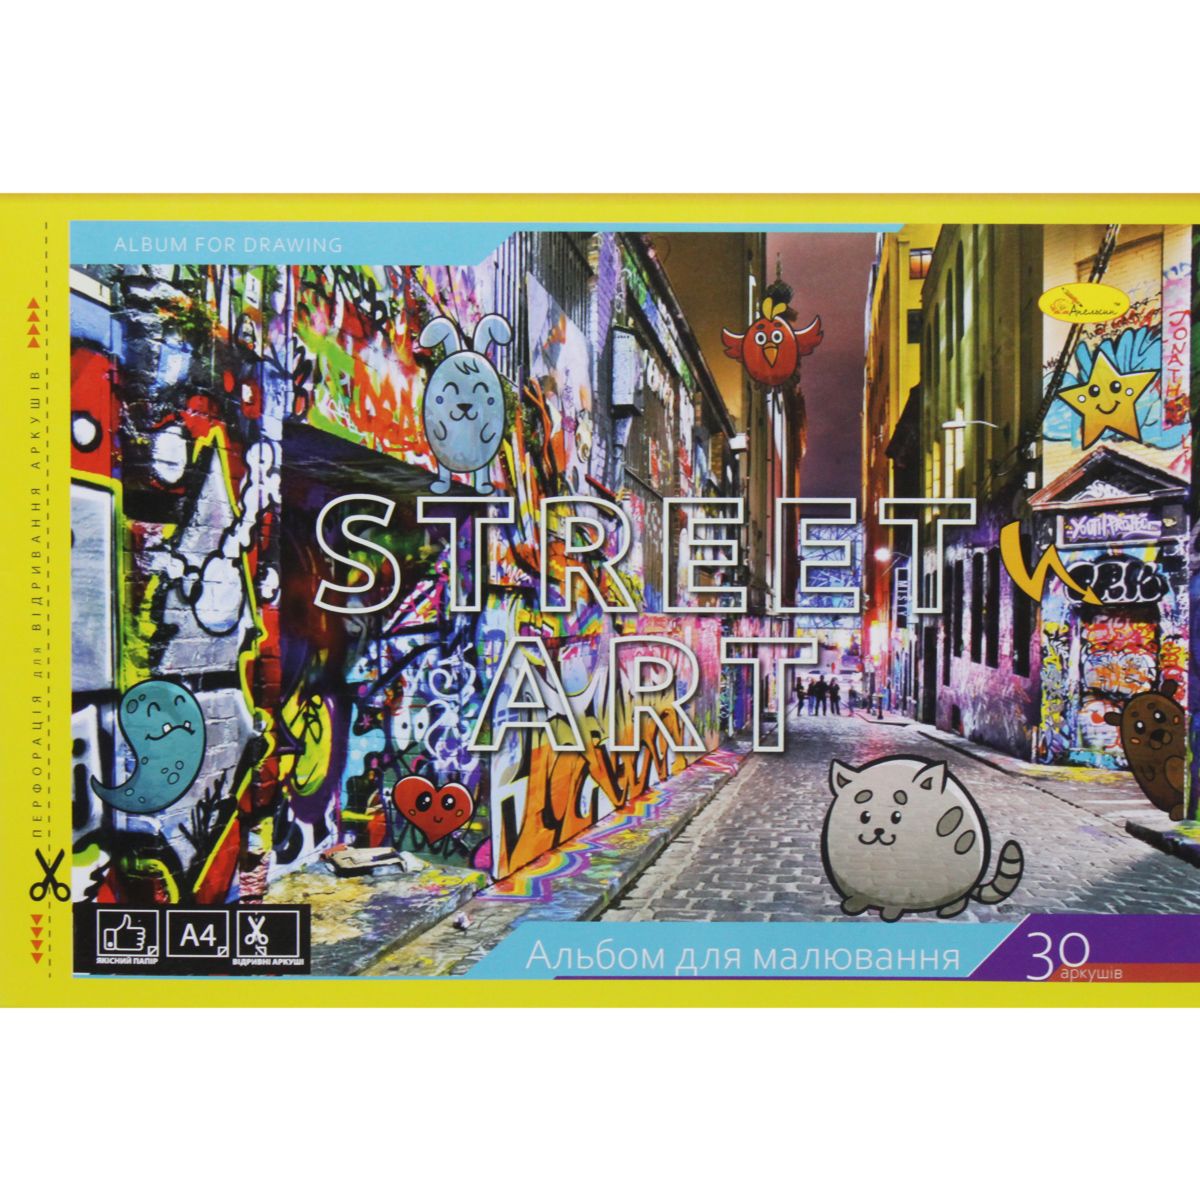 Альбом для малювання "Street art" (30 аркушів)